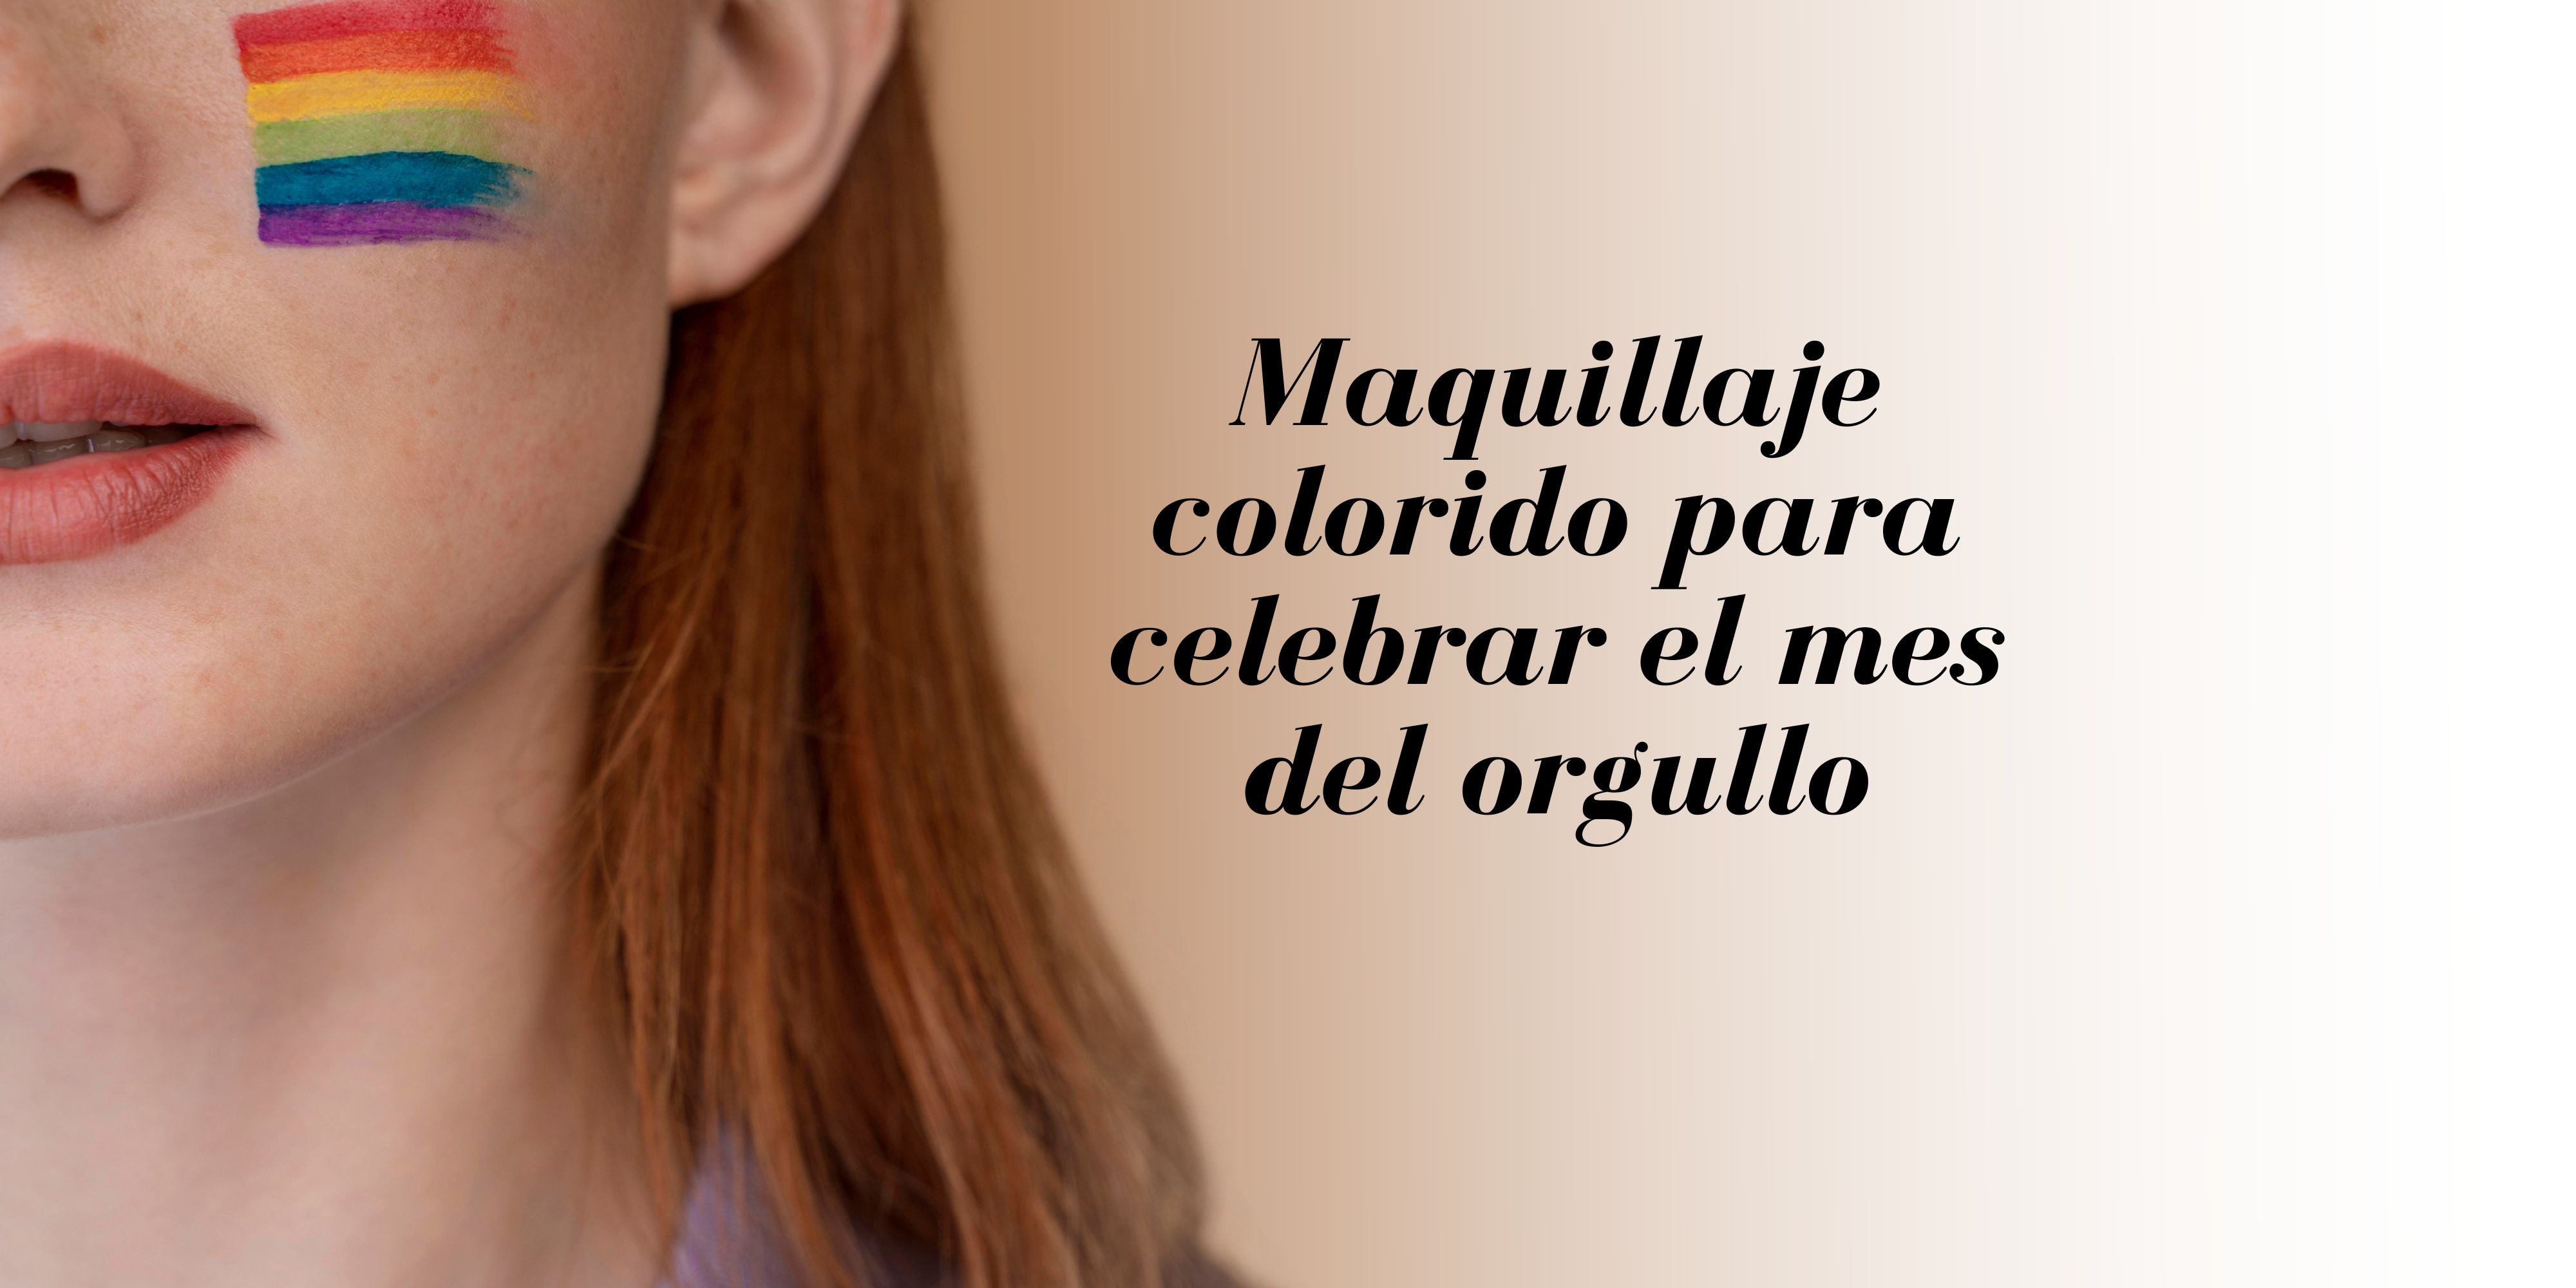 7 ideas de maquillaje colorido para celebrar el mes del orgullo LGBT+